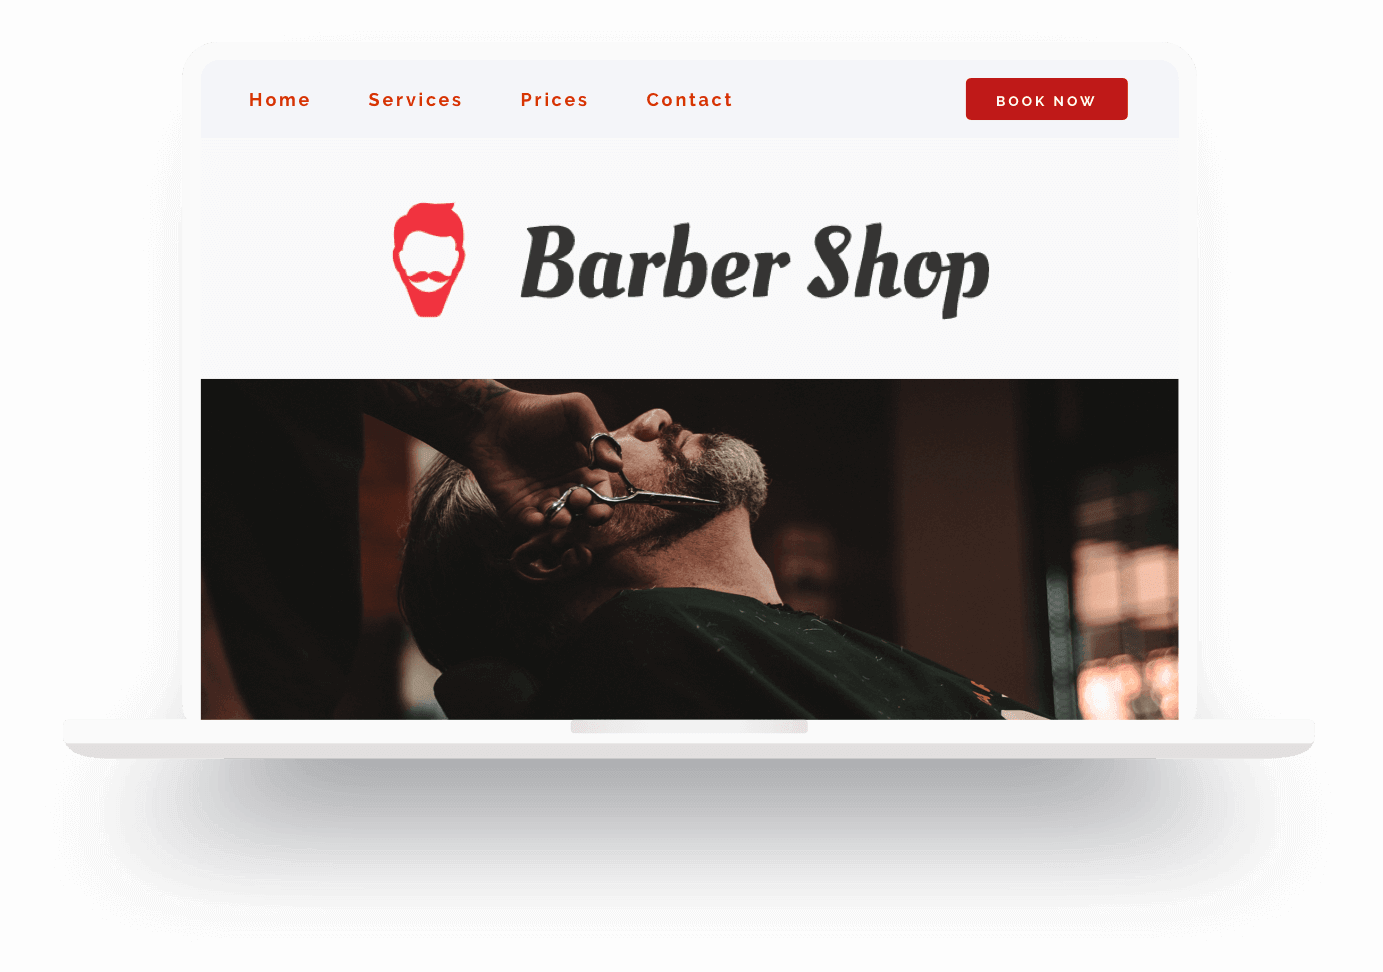 Beispiel für eine mit Jimdo erstellte Website eines Barber Shops